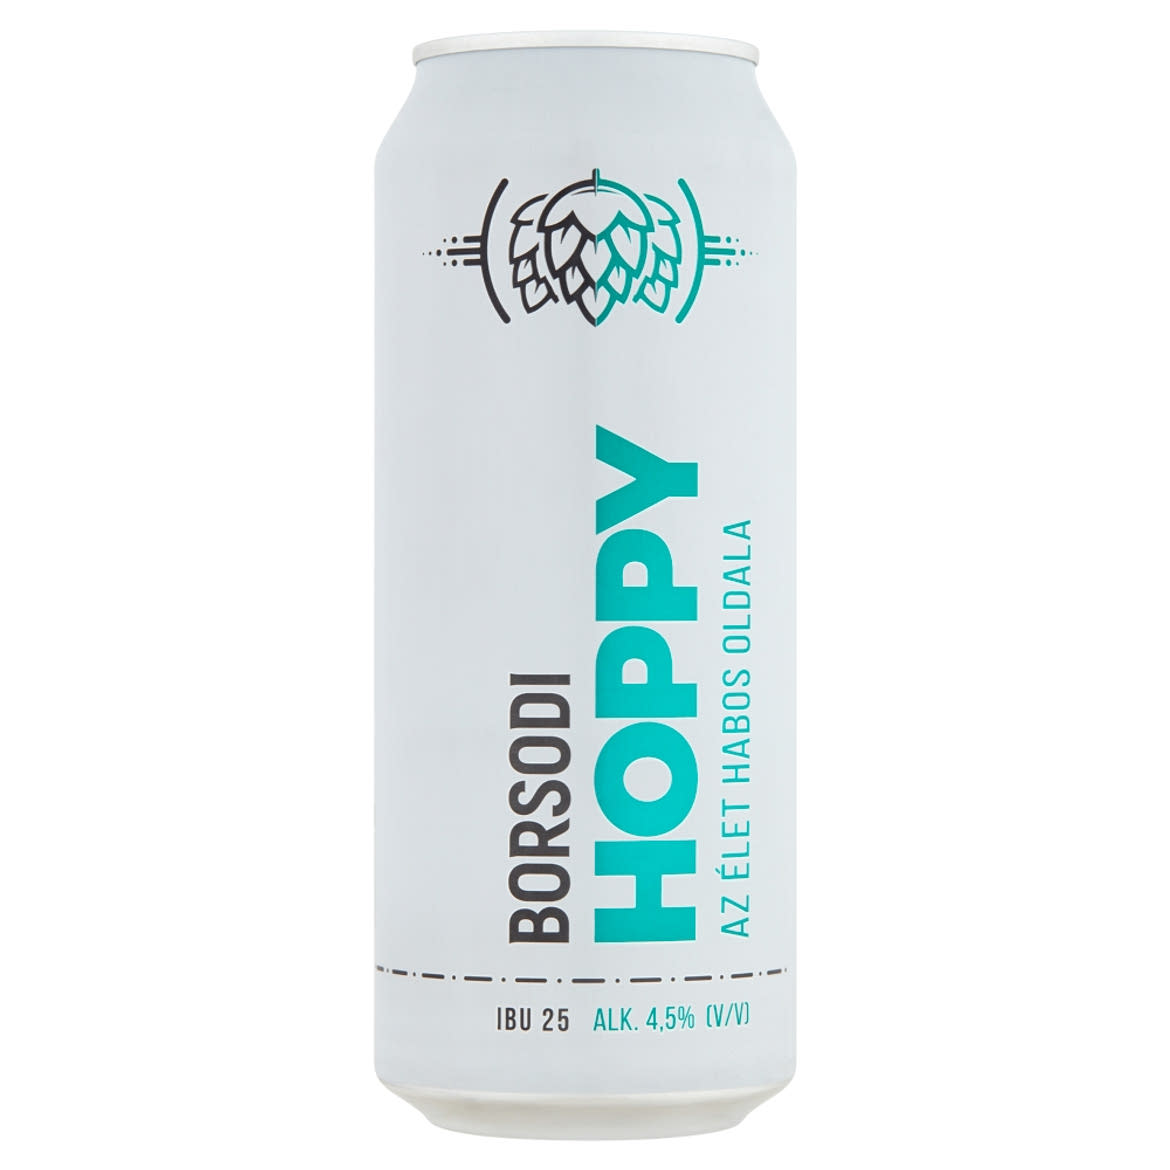 Borsodi Hoppy világos sör 4,5%